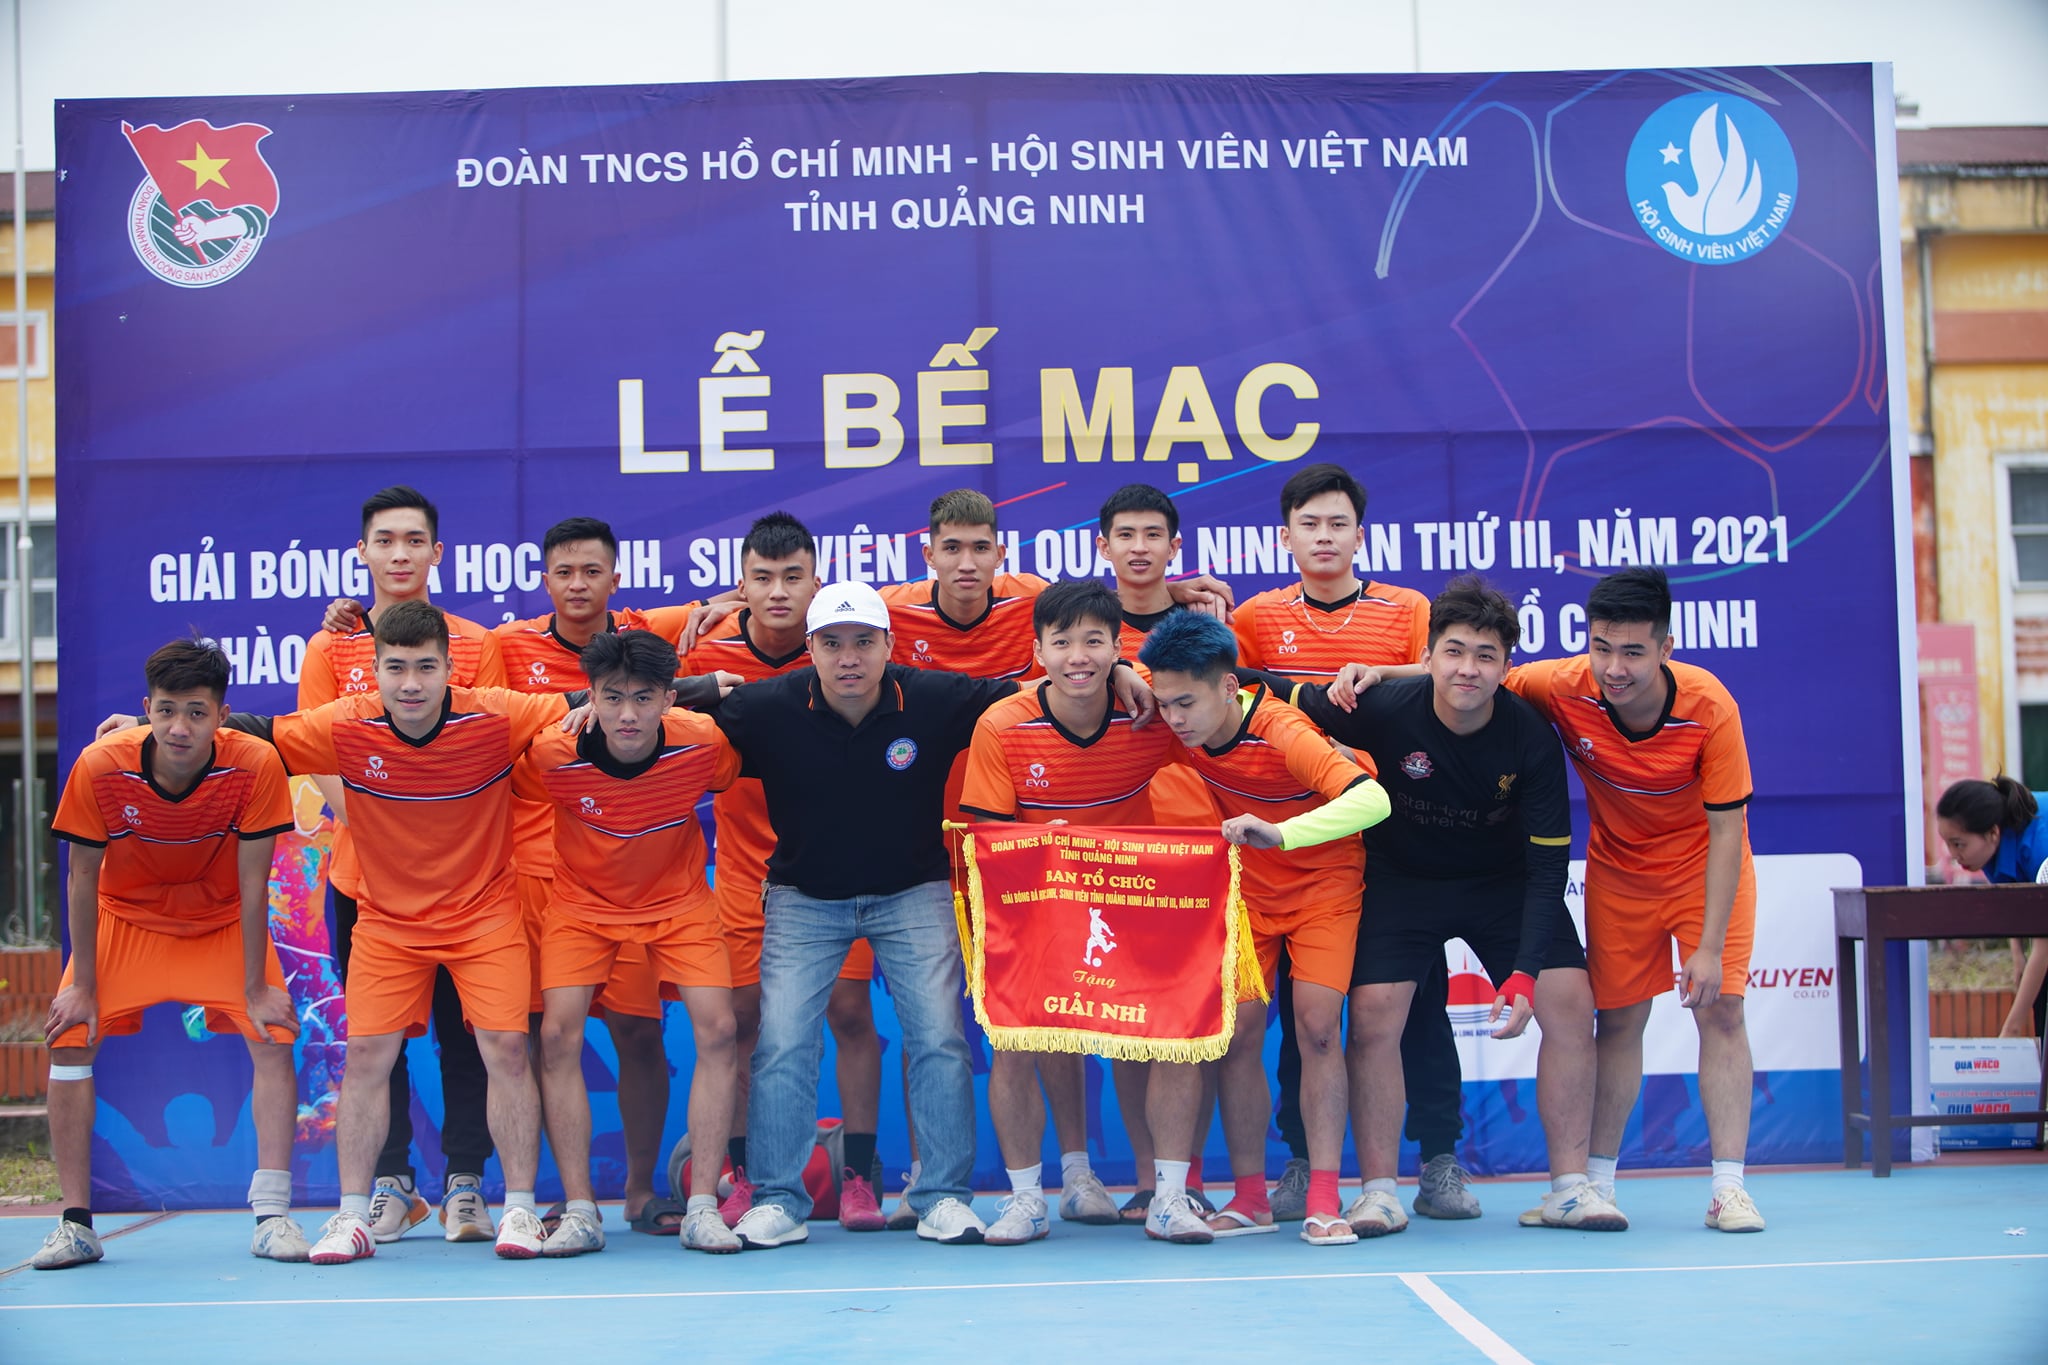 Trường Đại học Công nghiệp Quảng Ninh đạt giải Nhì Giải bóng đá học sinh sinh viên tỉnh Quảng Ninh lần thứ III, năm 2021